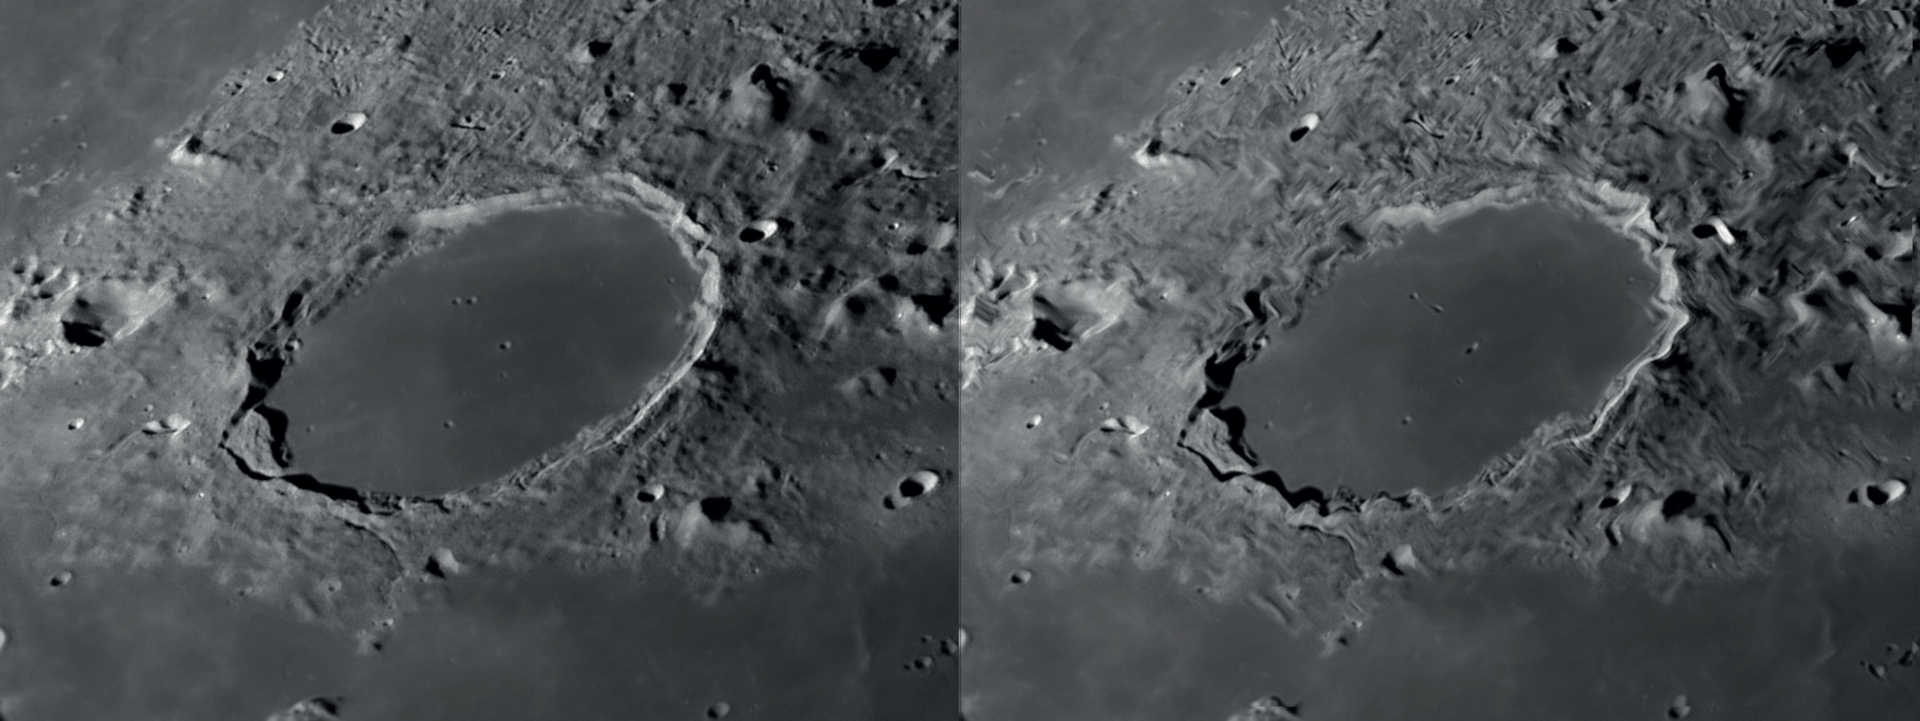 Dacă seeing-ul este bun, se pot recunoaște foarte multe detalii la observarea Lunii și planetelor (stânga). Mișcările lente ale aerului duc la distorsiuni localizate ale imaginii, în timp ce celelalte zone ale imaginii rămân clare (dreapta). NASA/GSFC/Arizona State University/L. Spix 